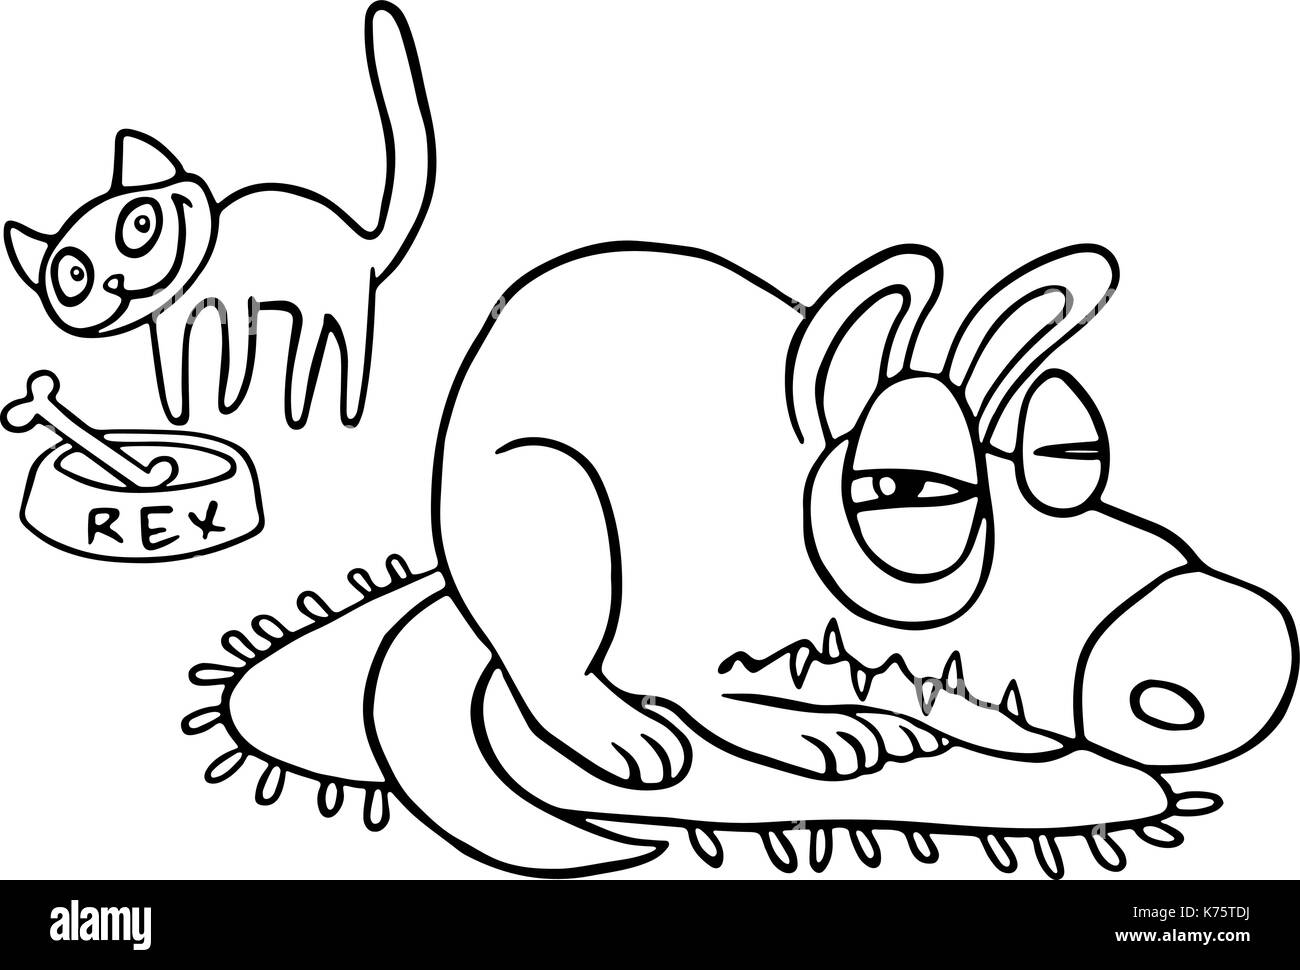 Le chat vole la nourriture tandis que le chien en colère dort. vector illustration isolé. meilleurs amis de personnages de dessins animés. Illustration de Vecteur